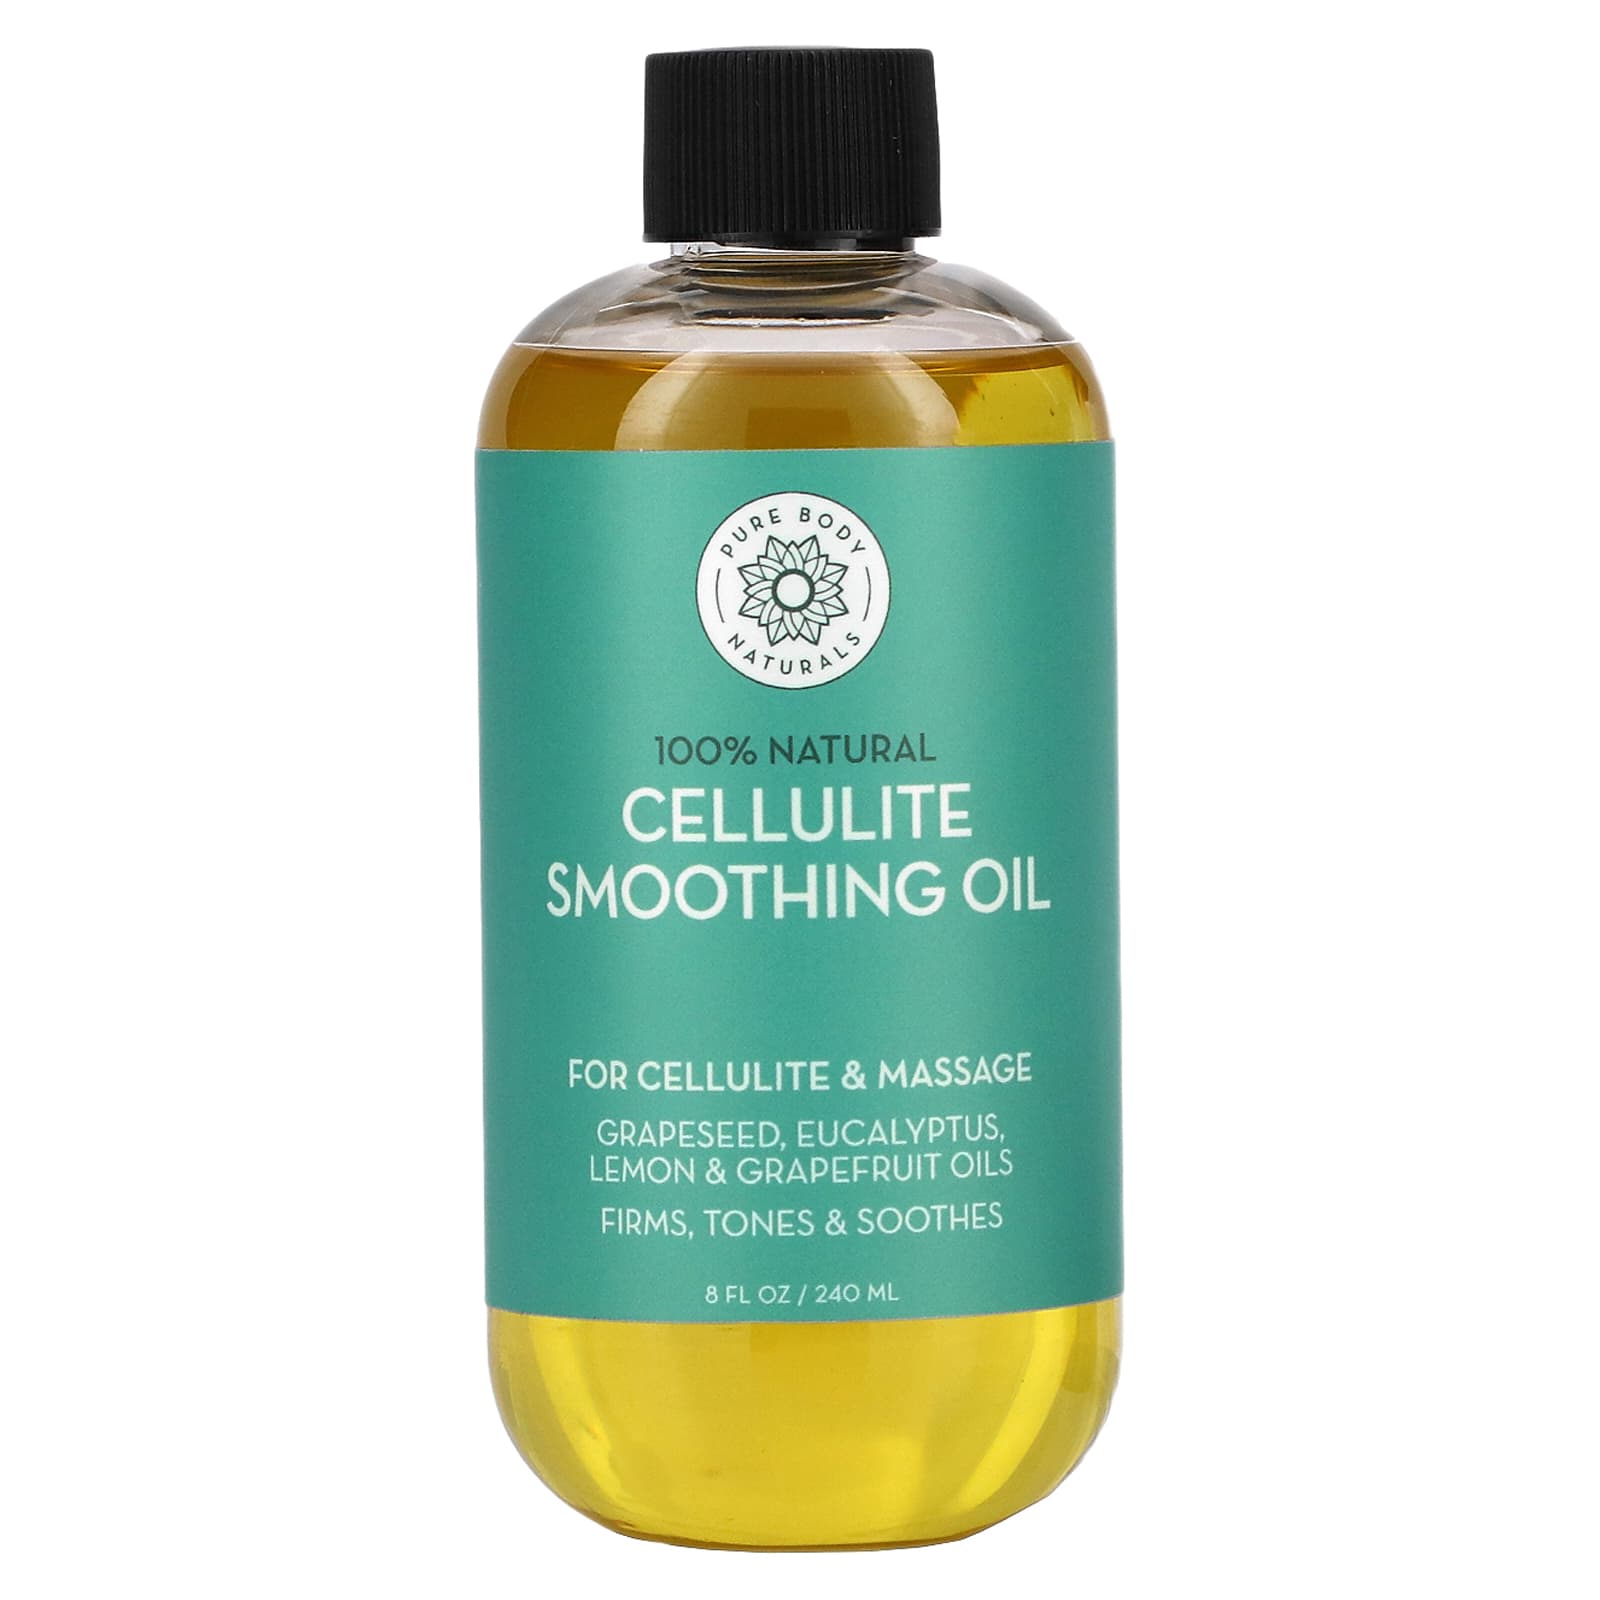 Cellulite Smoothing Oil, 8 fl oz (240 ml)